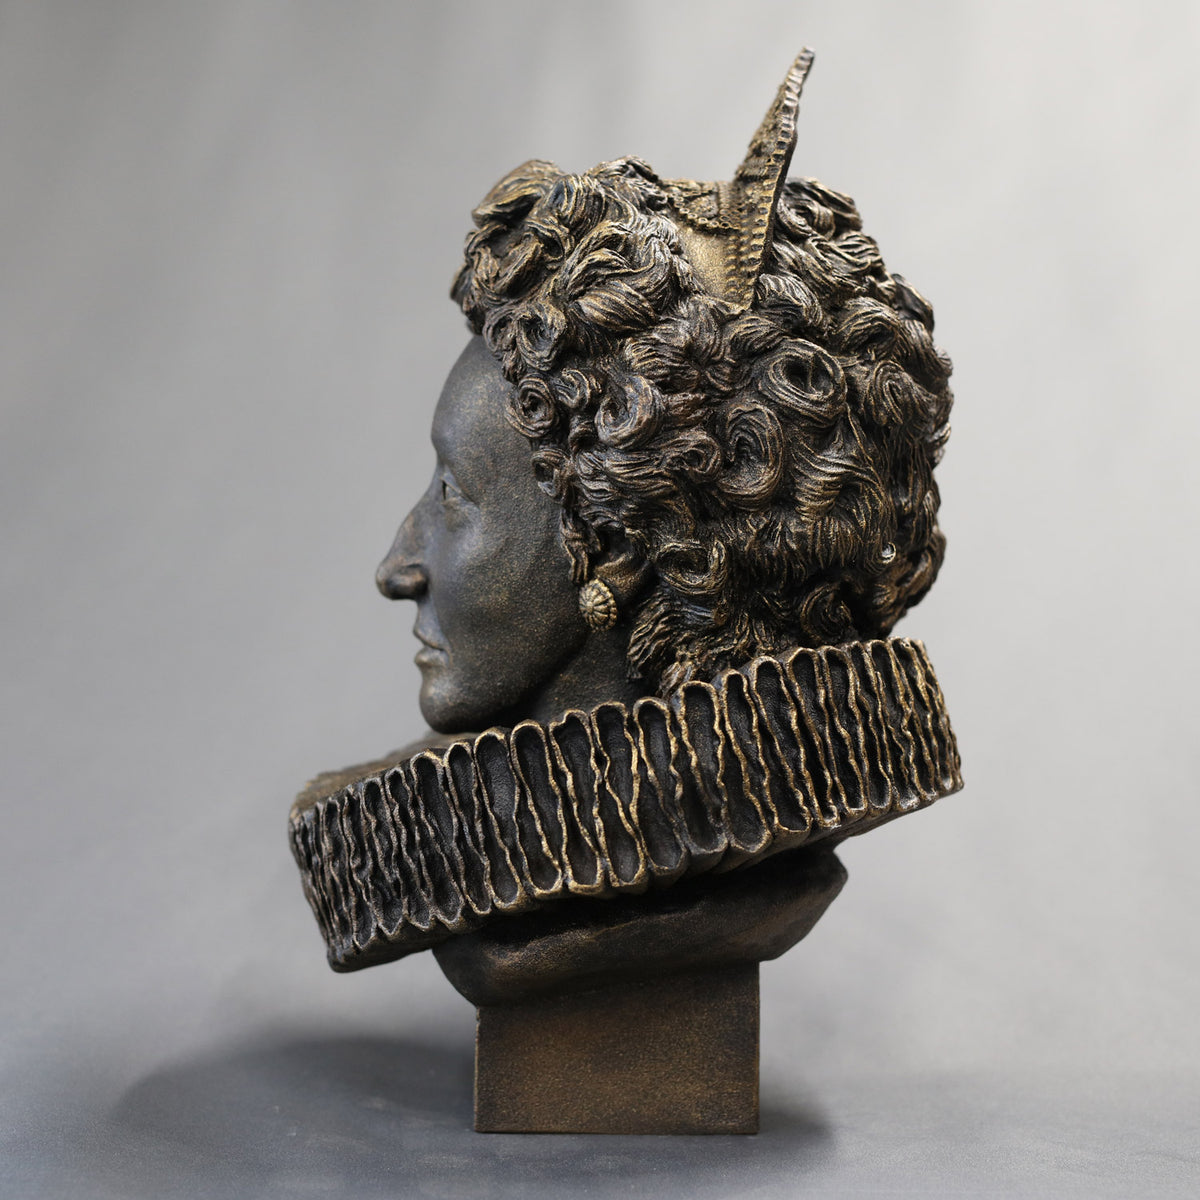 Queen Elizabeth I - Sculpture